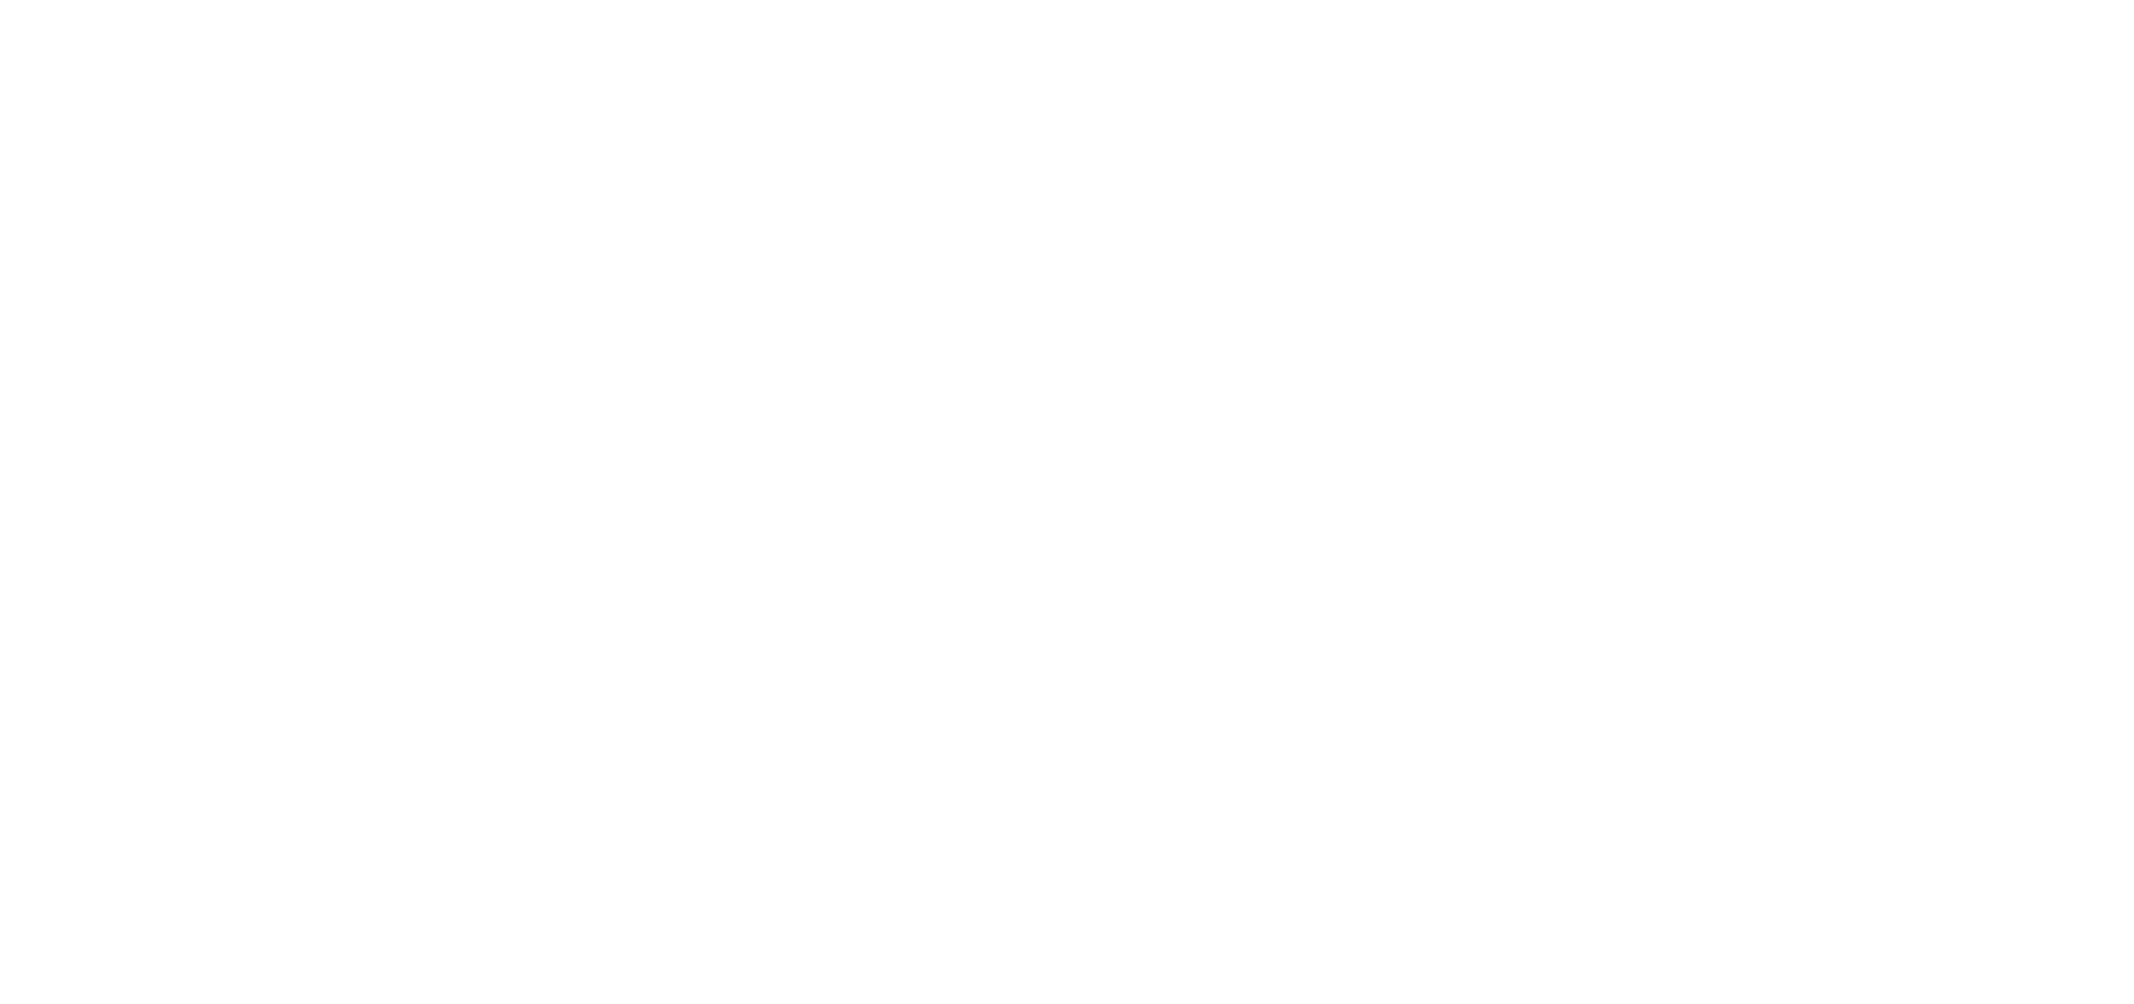 MGC STAR GROUP